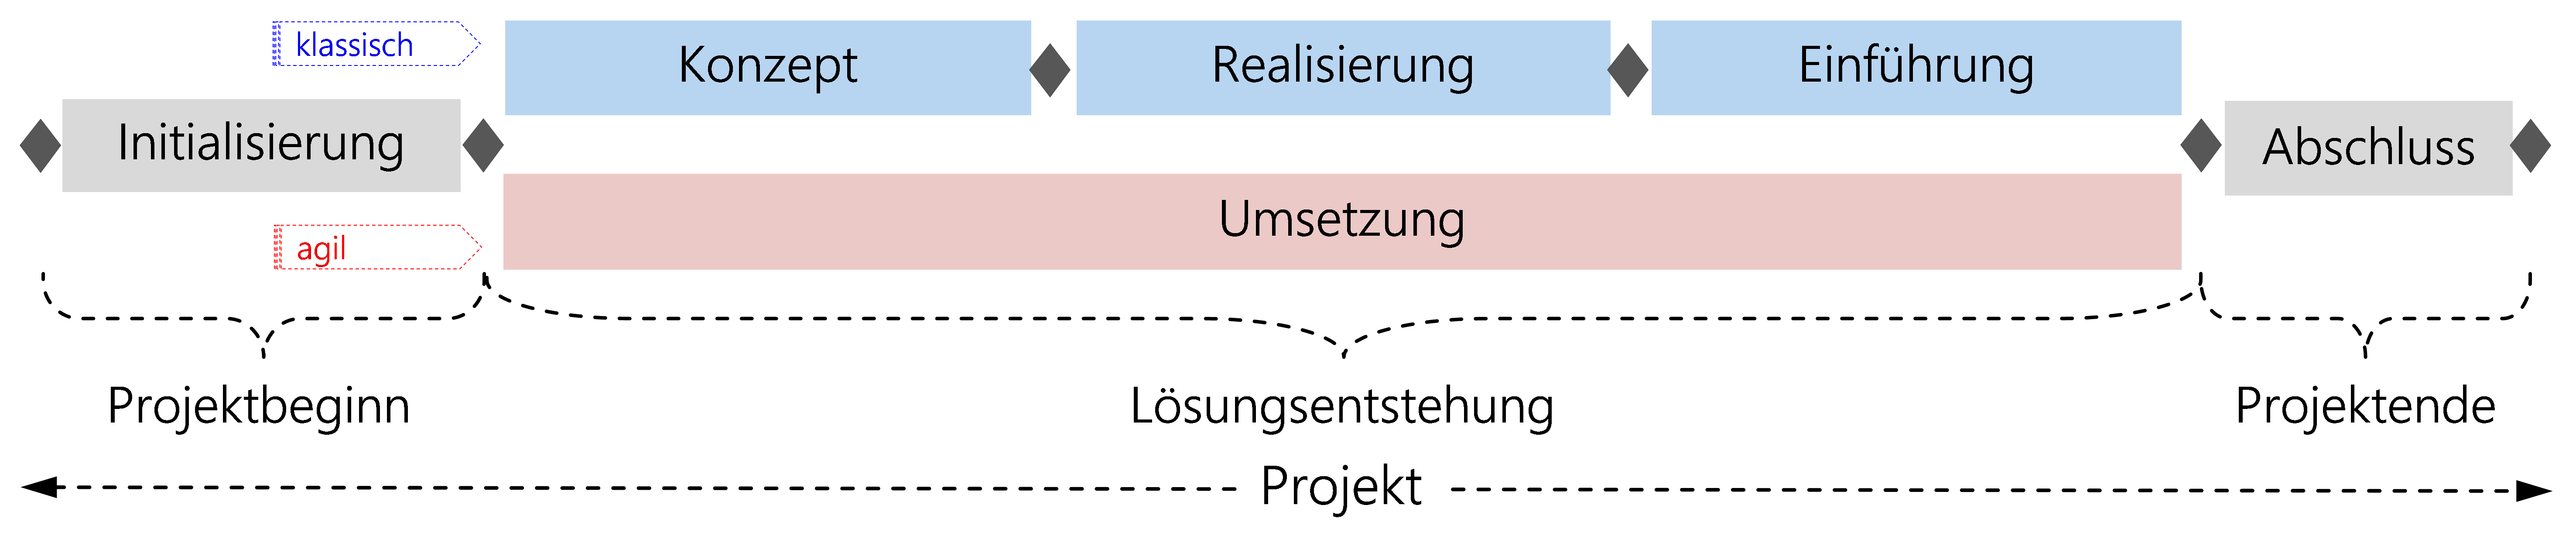 Abbildung: HERMES-Projektlebenszyklus mit Phasenmodell für klassische und agile Vorgehensweise